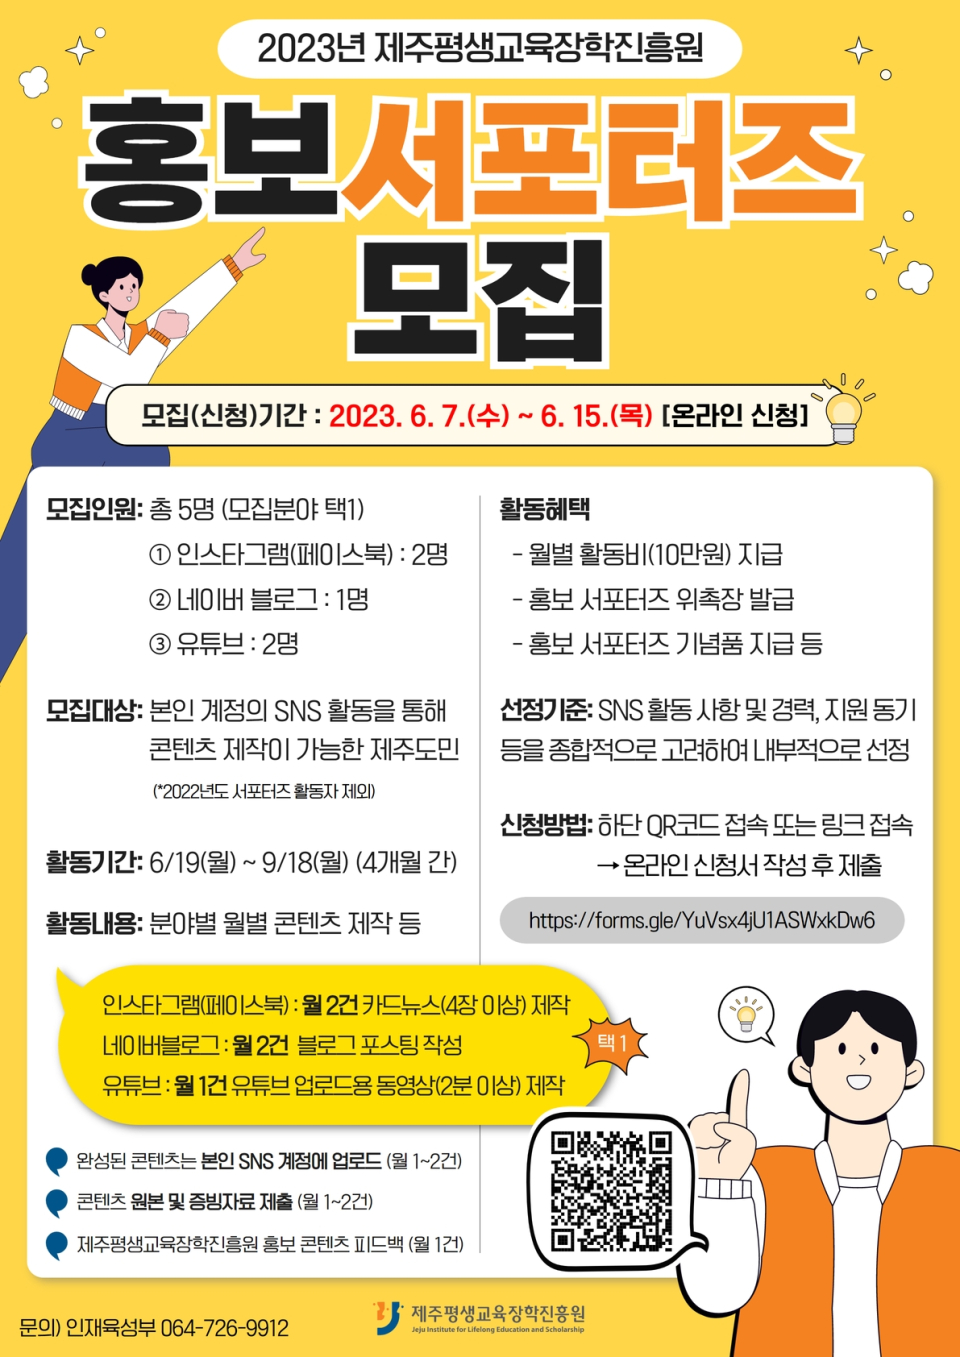 제주평생교육장학진흥원, SNS 홍보 서포터즈 모집